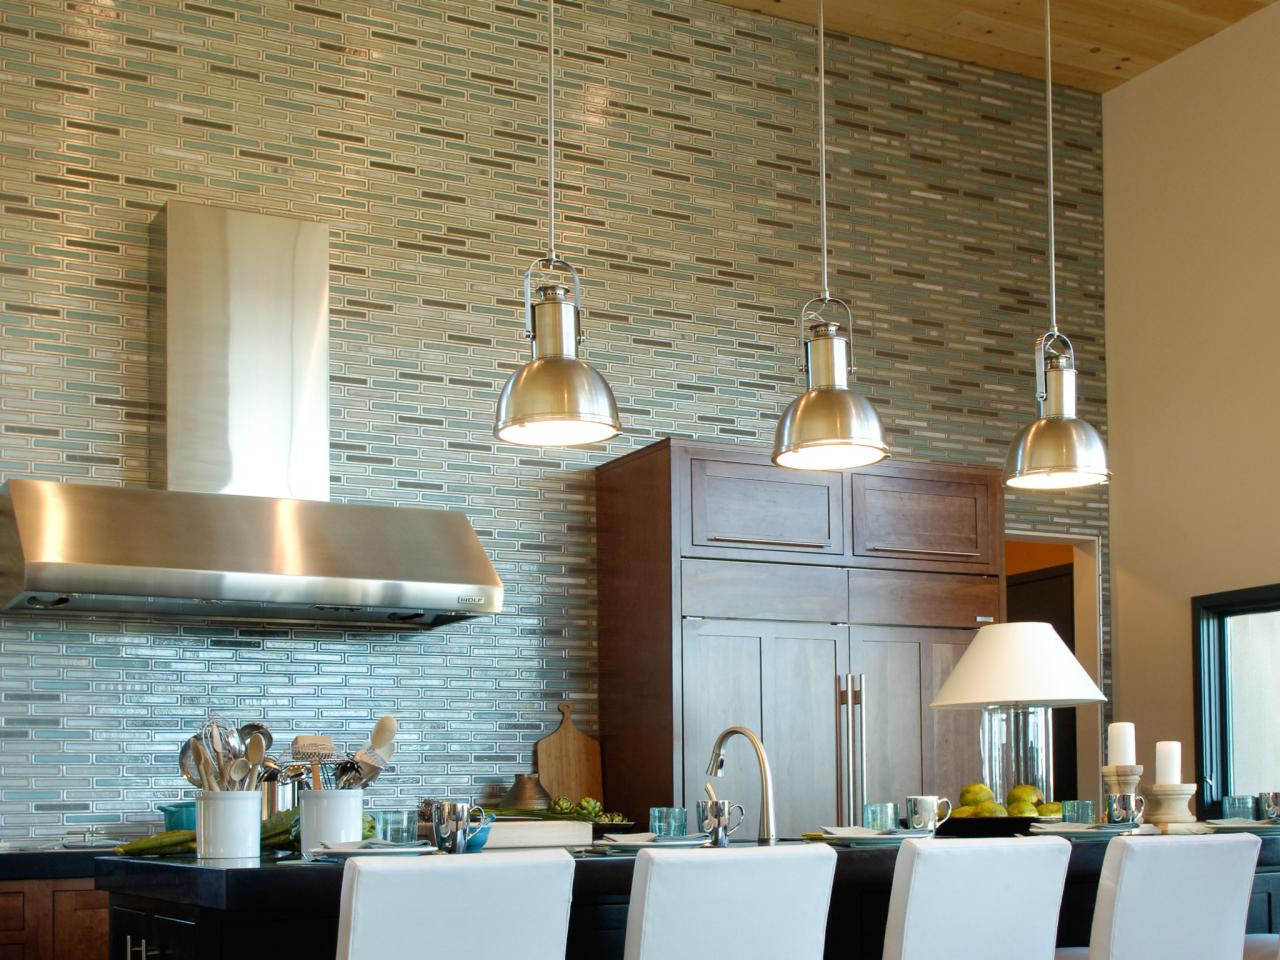 Tiled Kitchen Backsplash
 75 Kitchen Backsplash Ideas for 2020 Tile Glass Metal etc